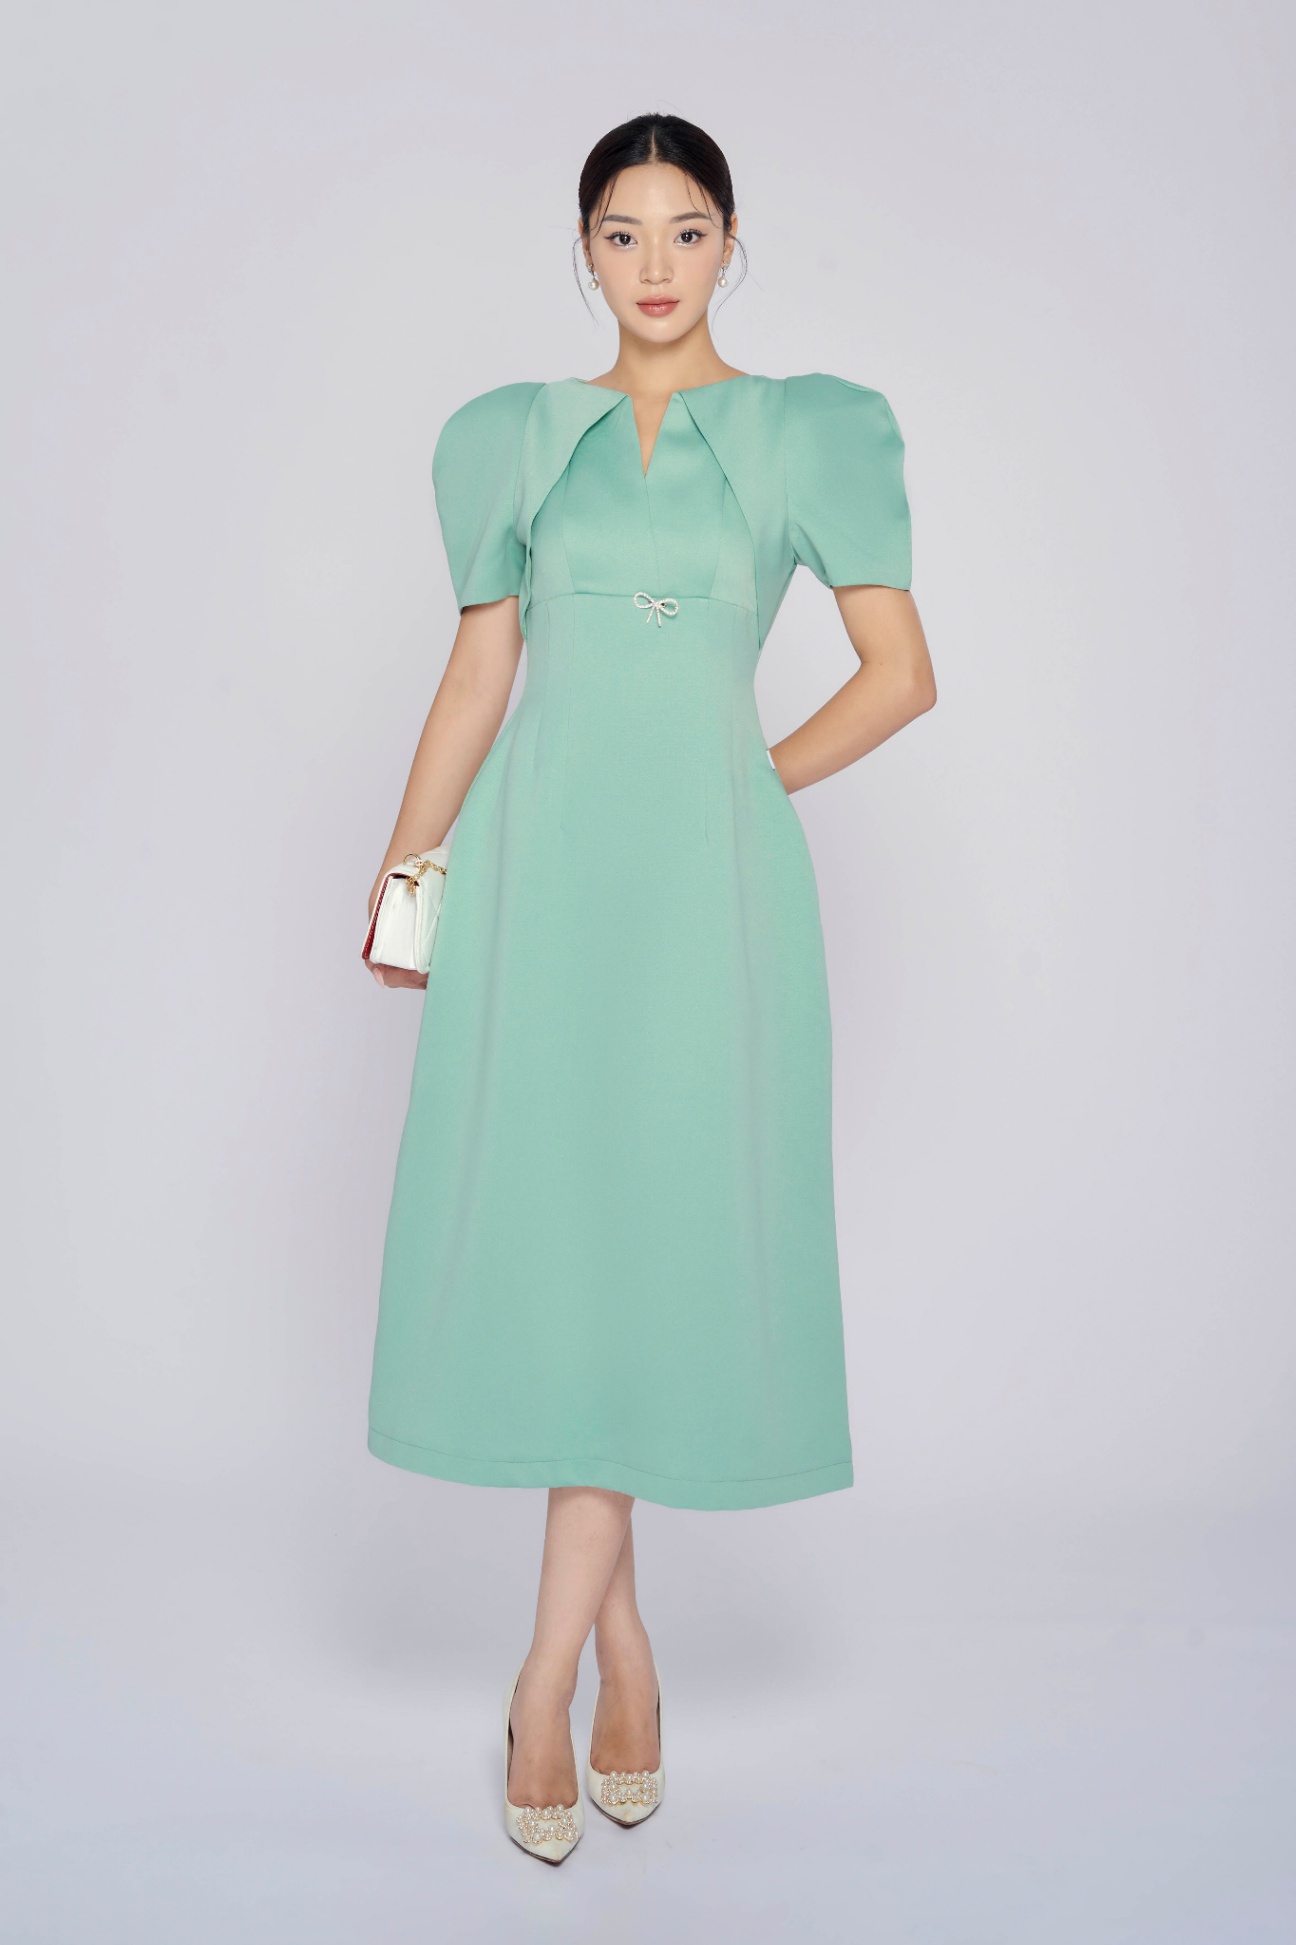 Đầm tay bồng - Thiết kế cổ điển không thể thiếu trong tủ đồ | IVY moda